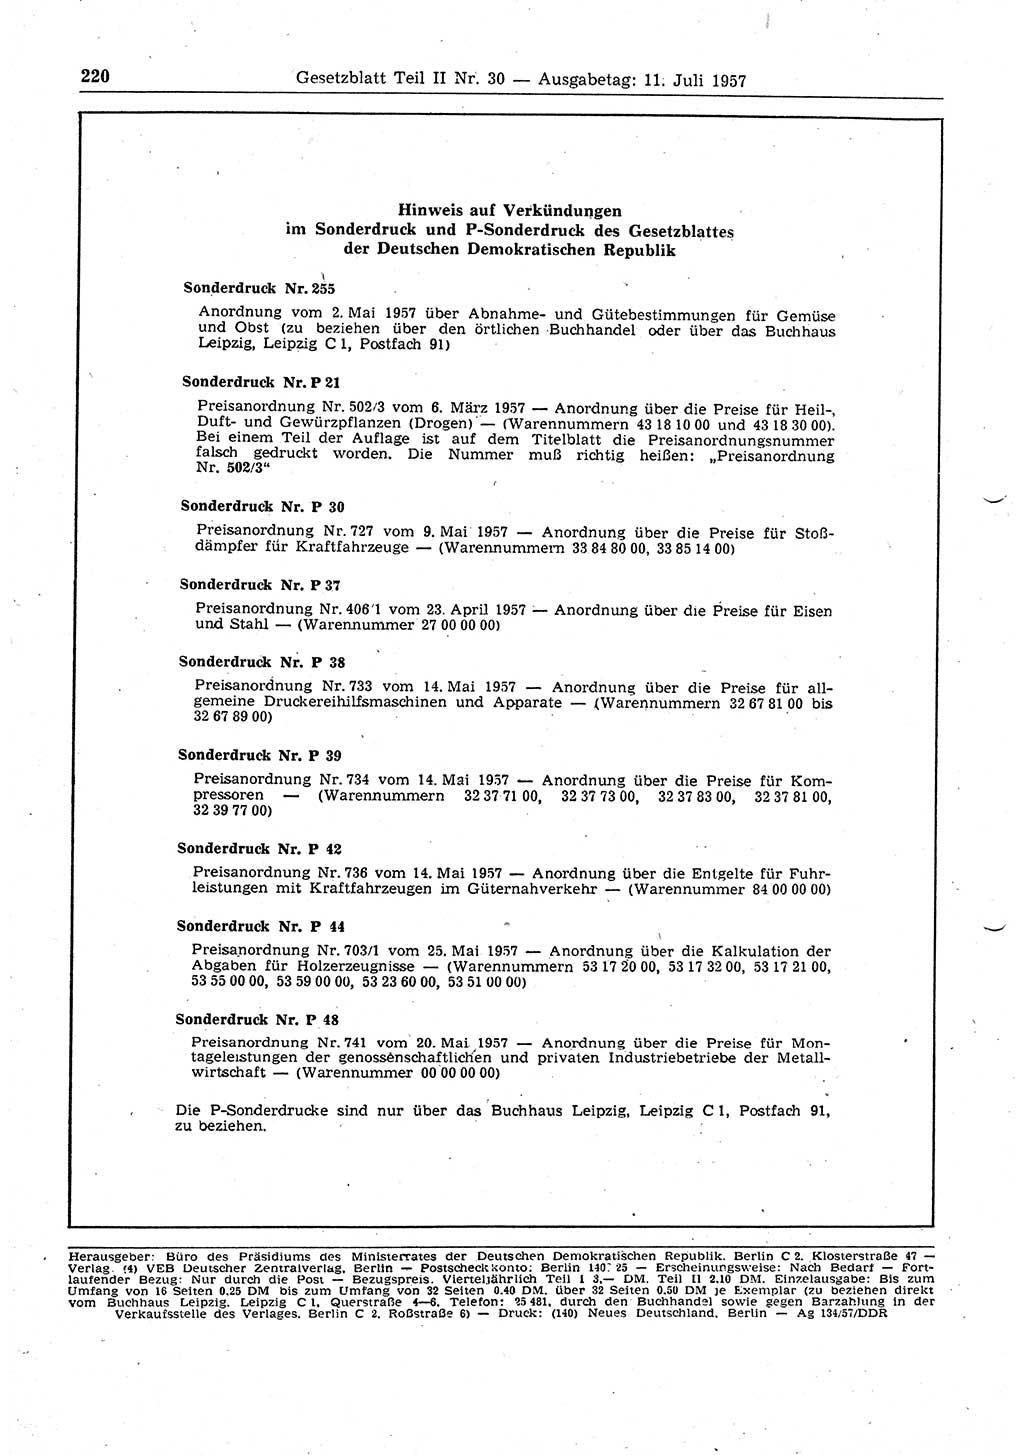 Gesetzblatt (GBl.) der Deutschen Demokratischen Republik (DDR) Teil ⅠⅠ 1957, Seite 220 (GBl. DDR ⅠⅠ 1957, S. 220)